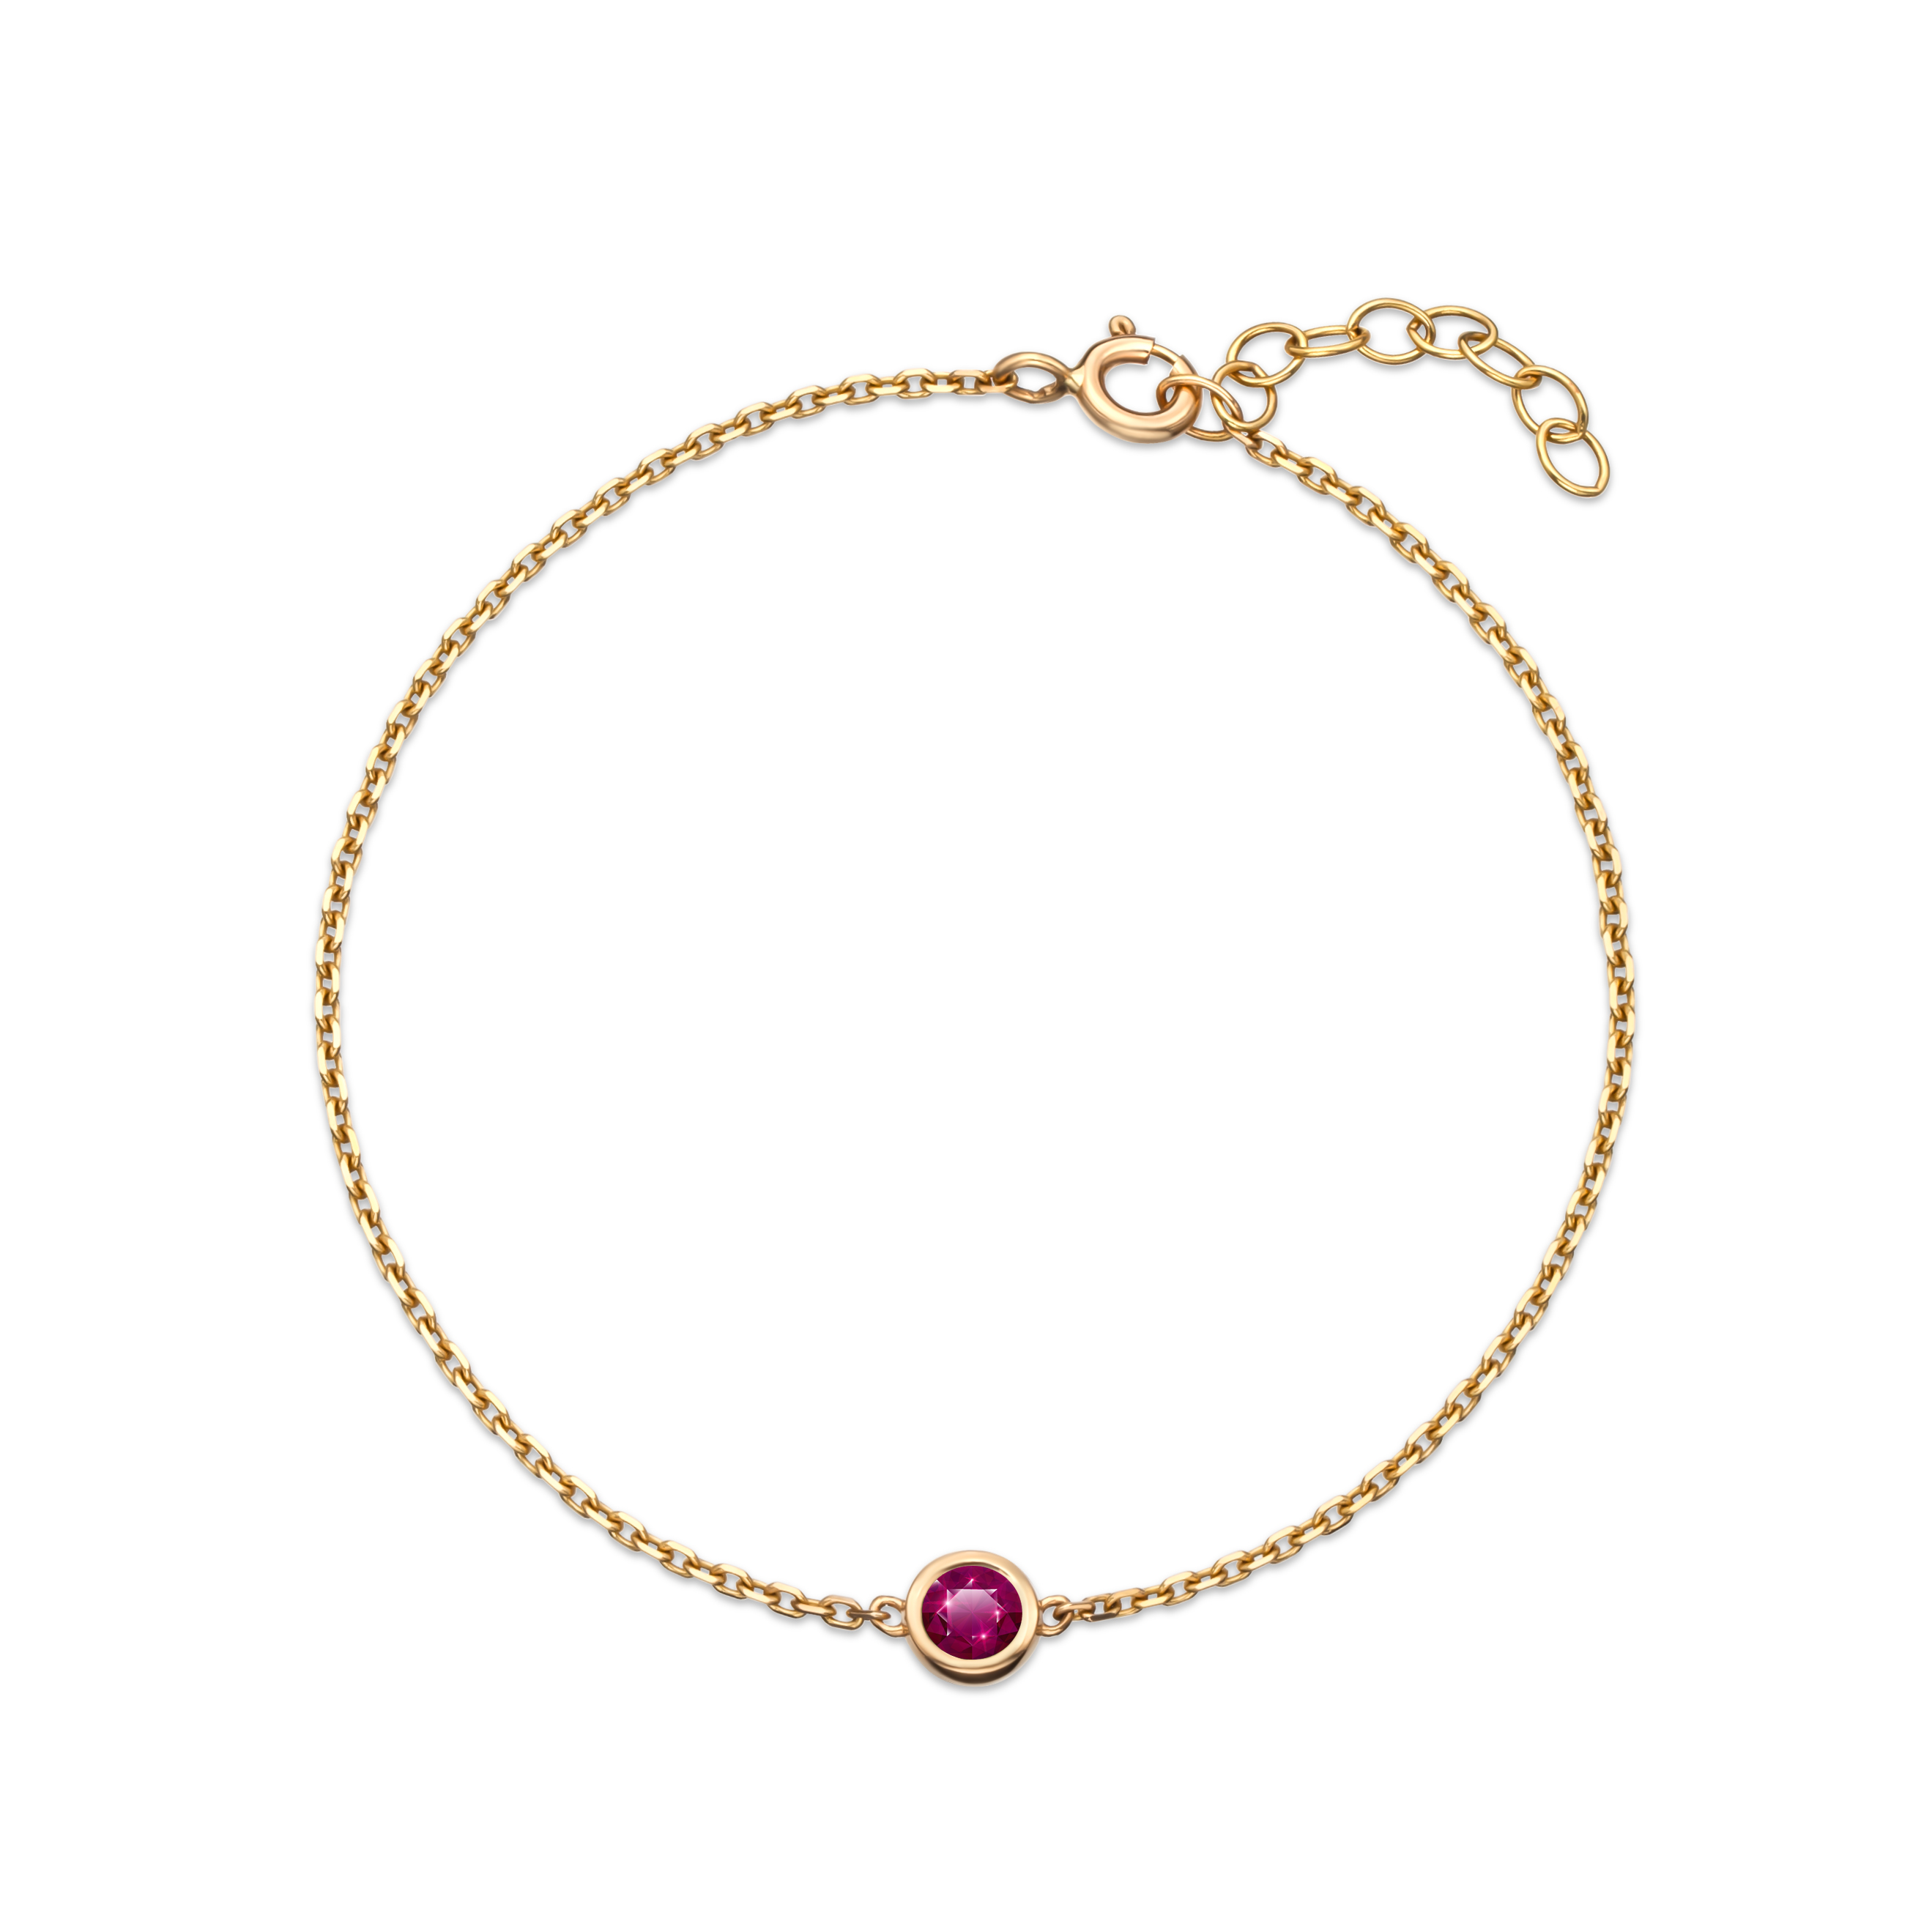 Ruby birthstone bracelet